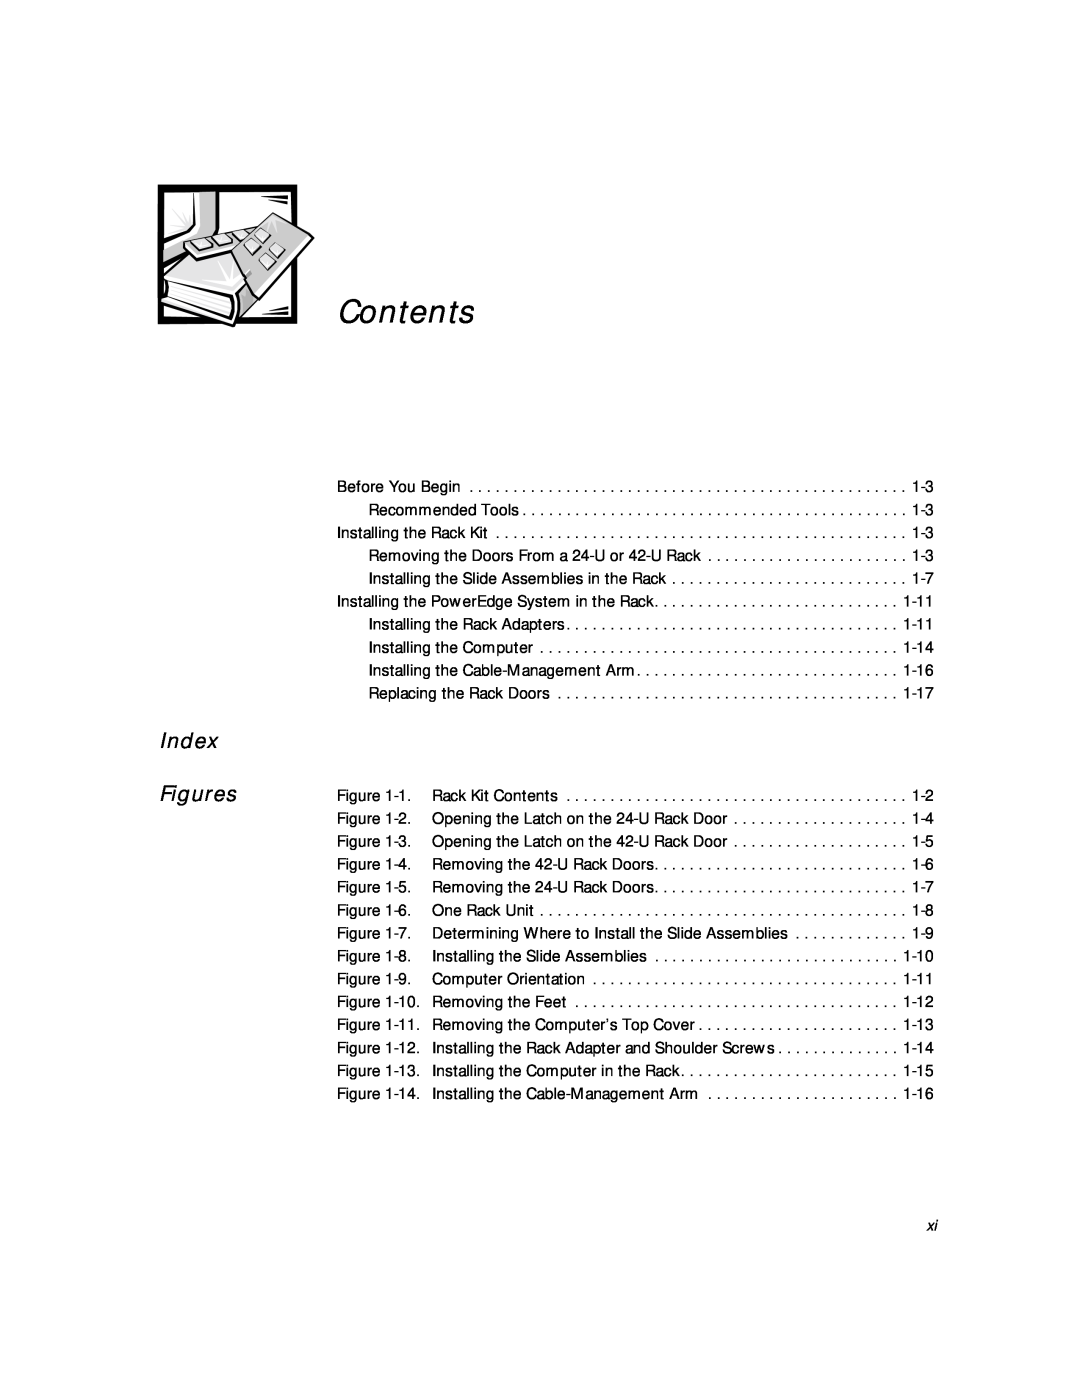 Dell 2400 manual Index Figures, Contents 